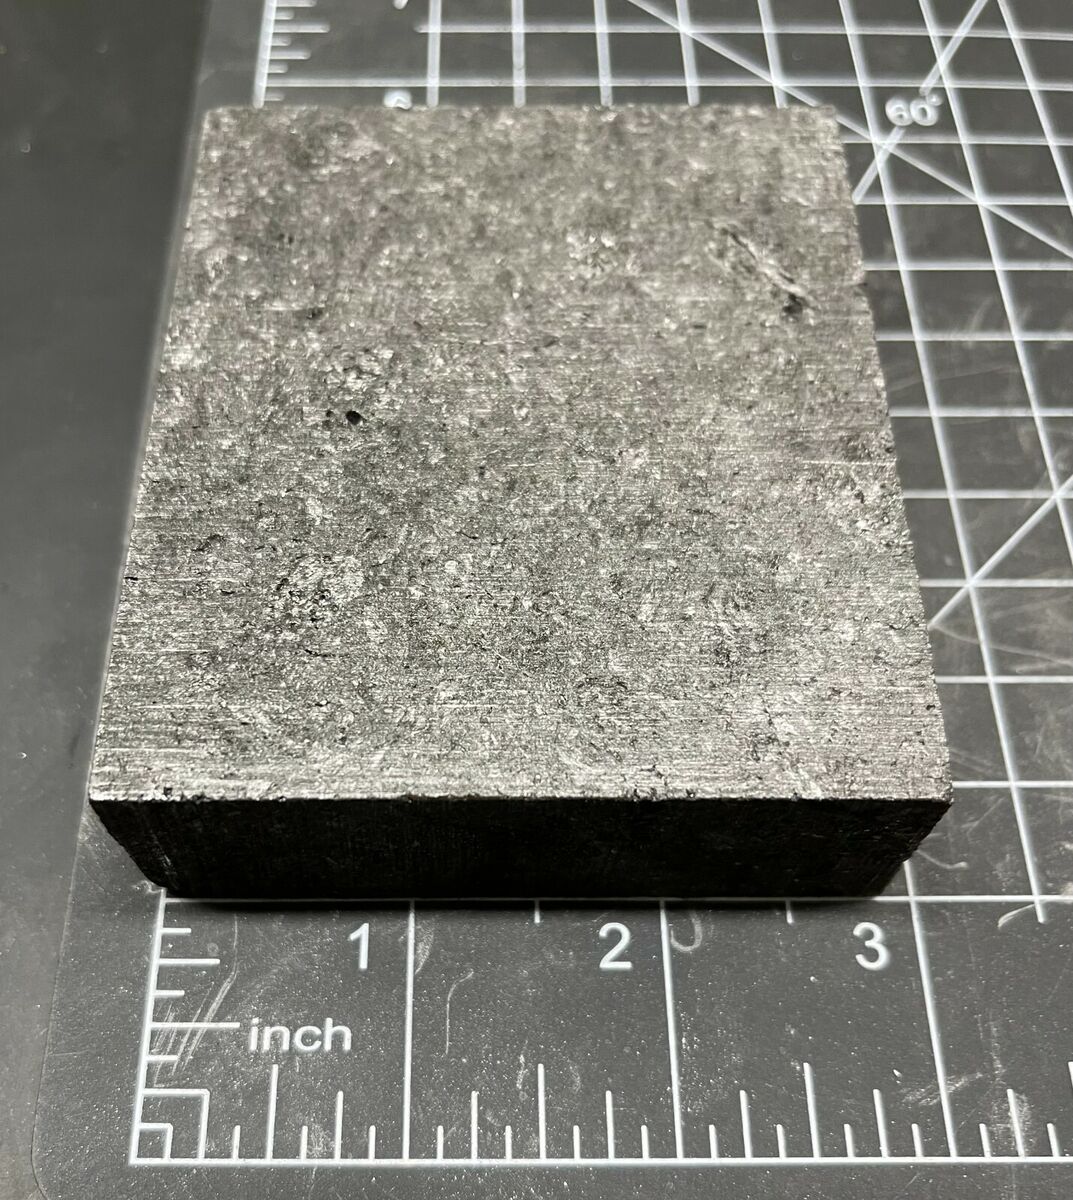 Coarse Grain Graphite Block Approximately 1 x 2.875 x 3.5